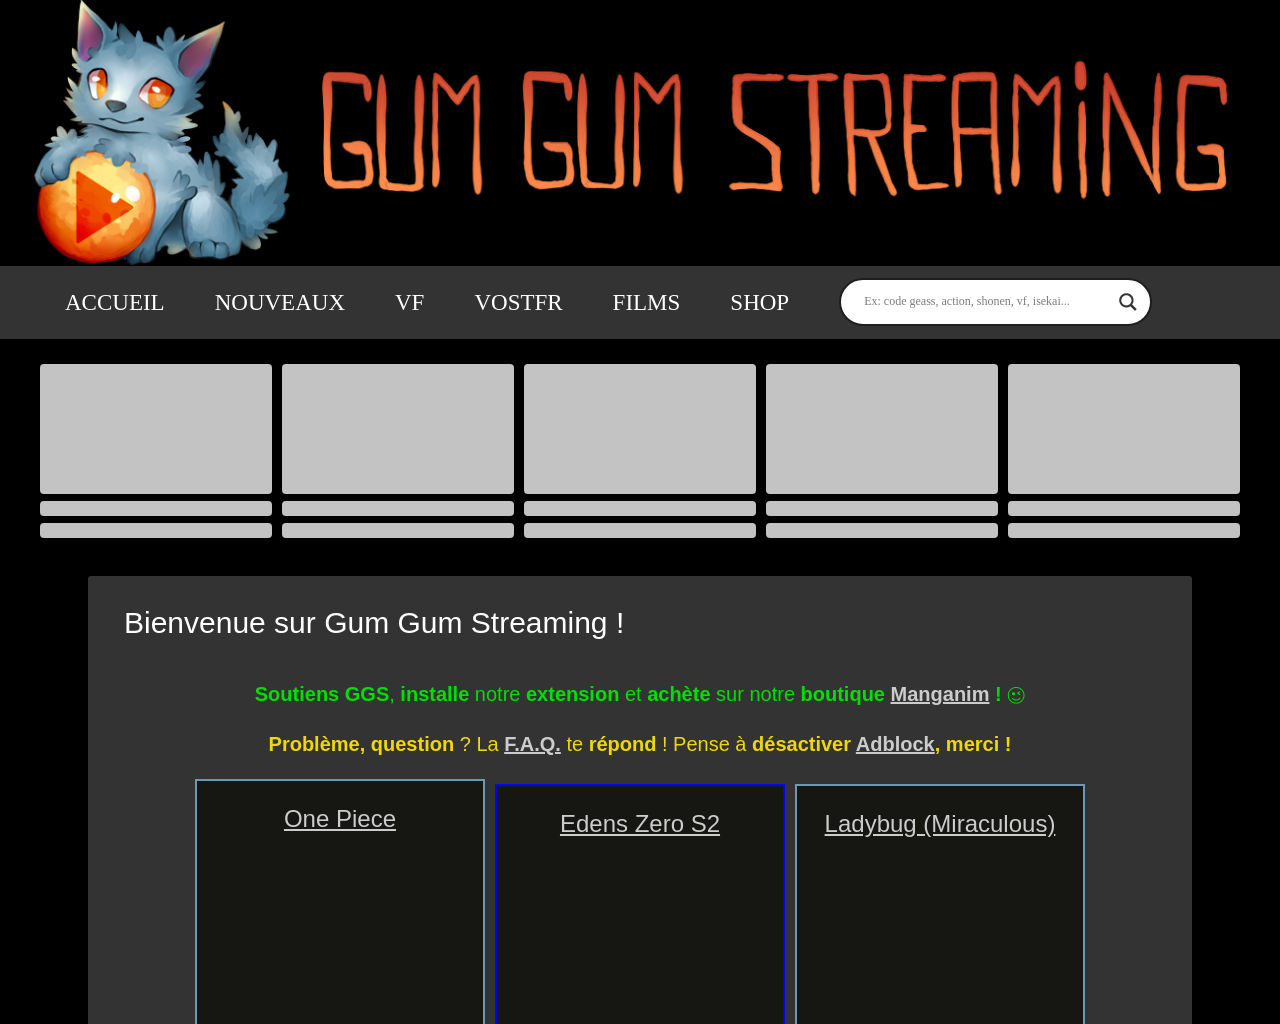 gum-gum-streaming.com